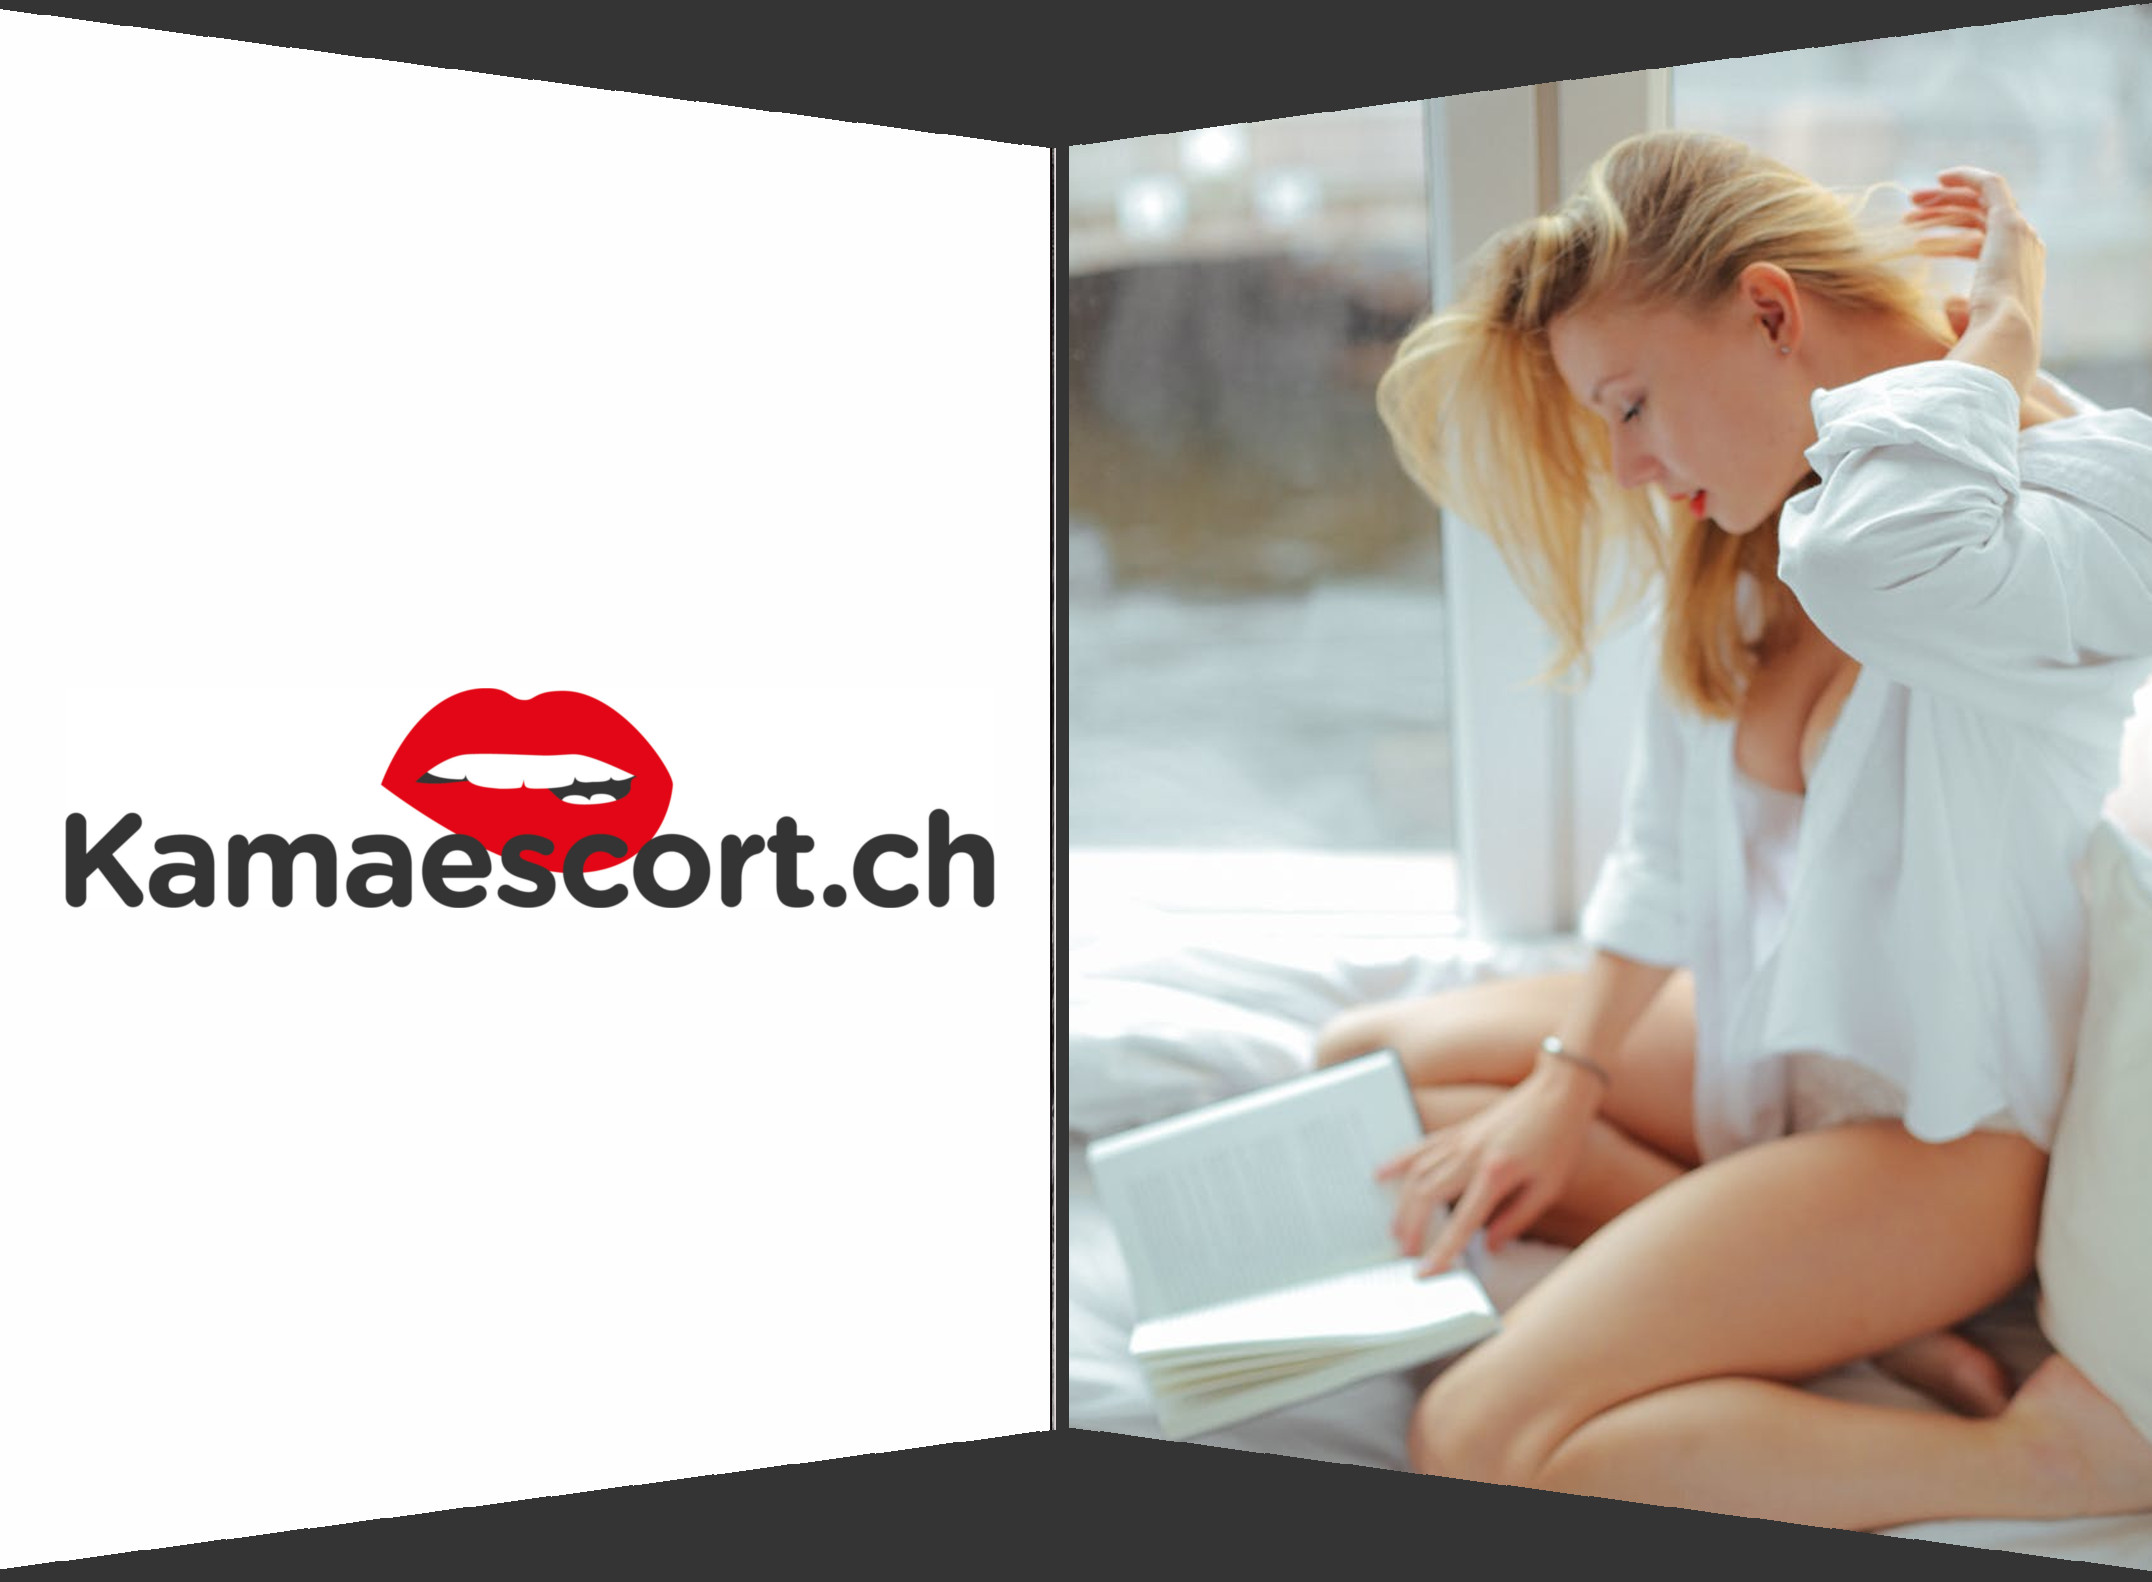 Escort girl législation suisse, relations très sensuelles sans limites